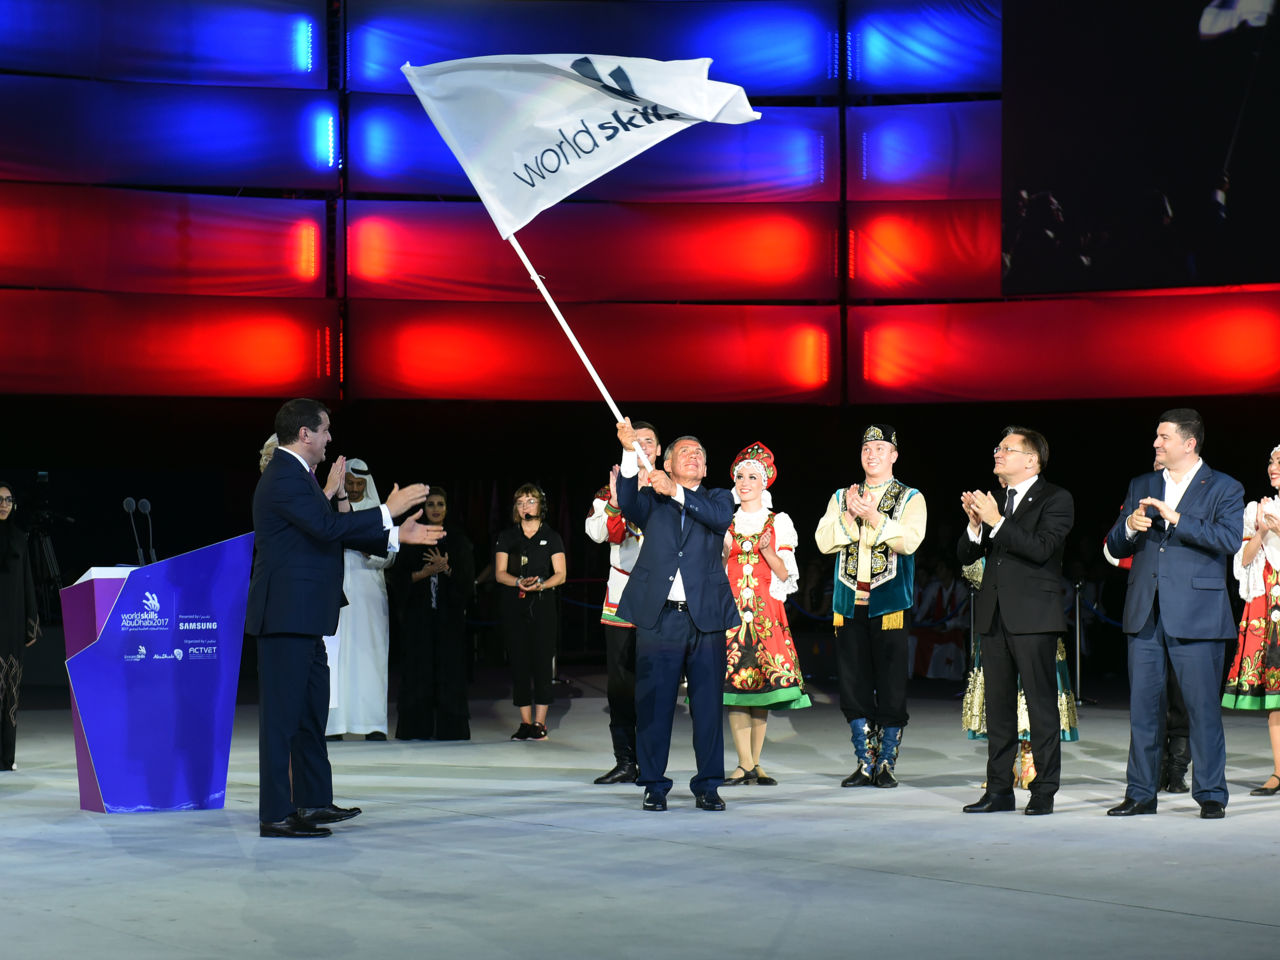 WorldSkills flag relay begins in Sochi Russia